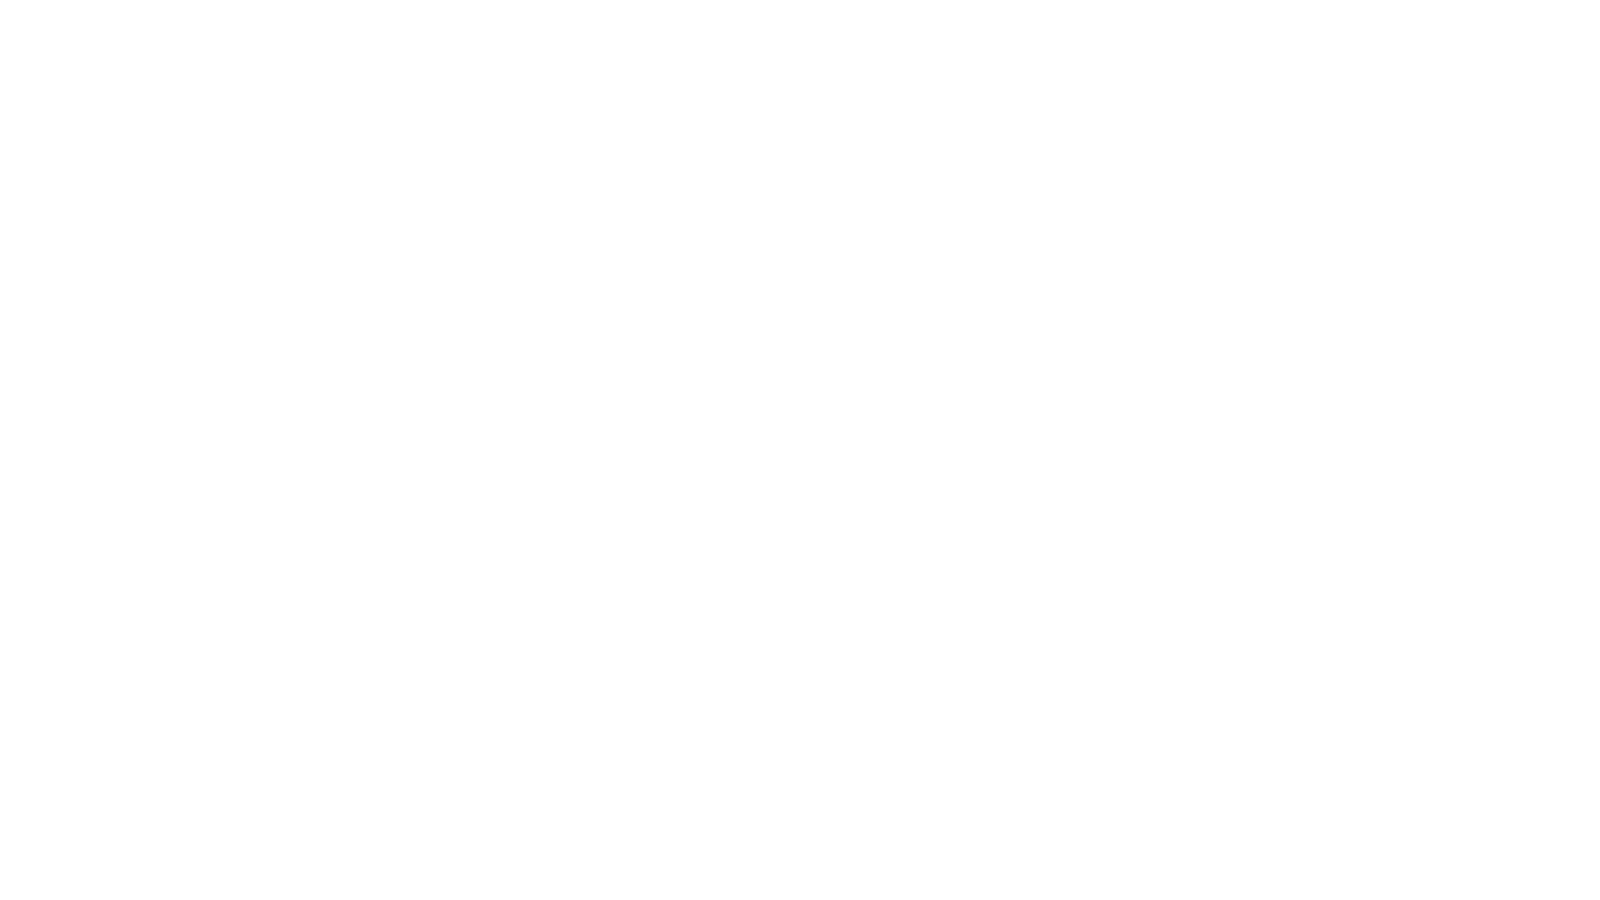 Ilustración de una silla para videojuegos Embody mostrada de frente con especificaciones de la altura y la anchura con un fondo negro.